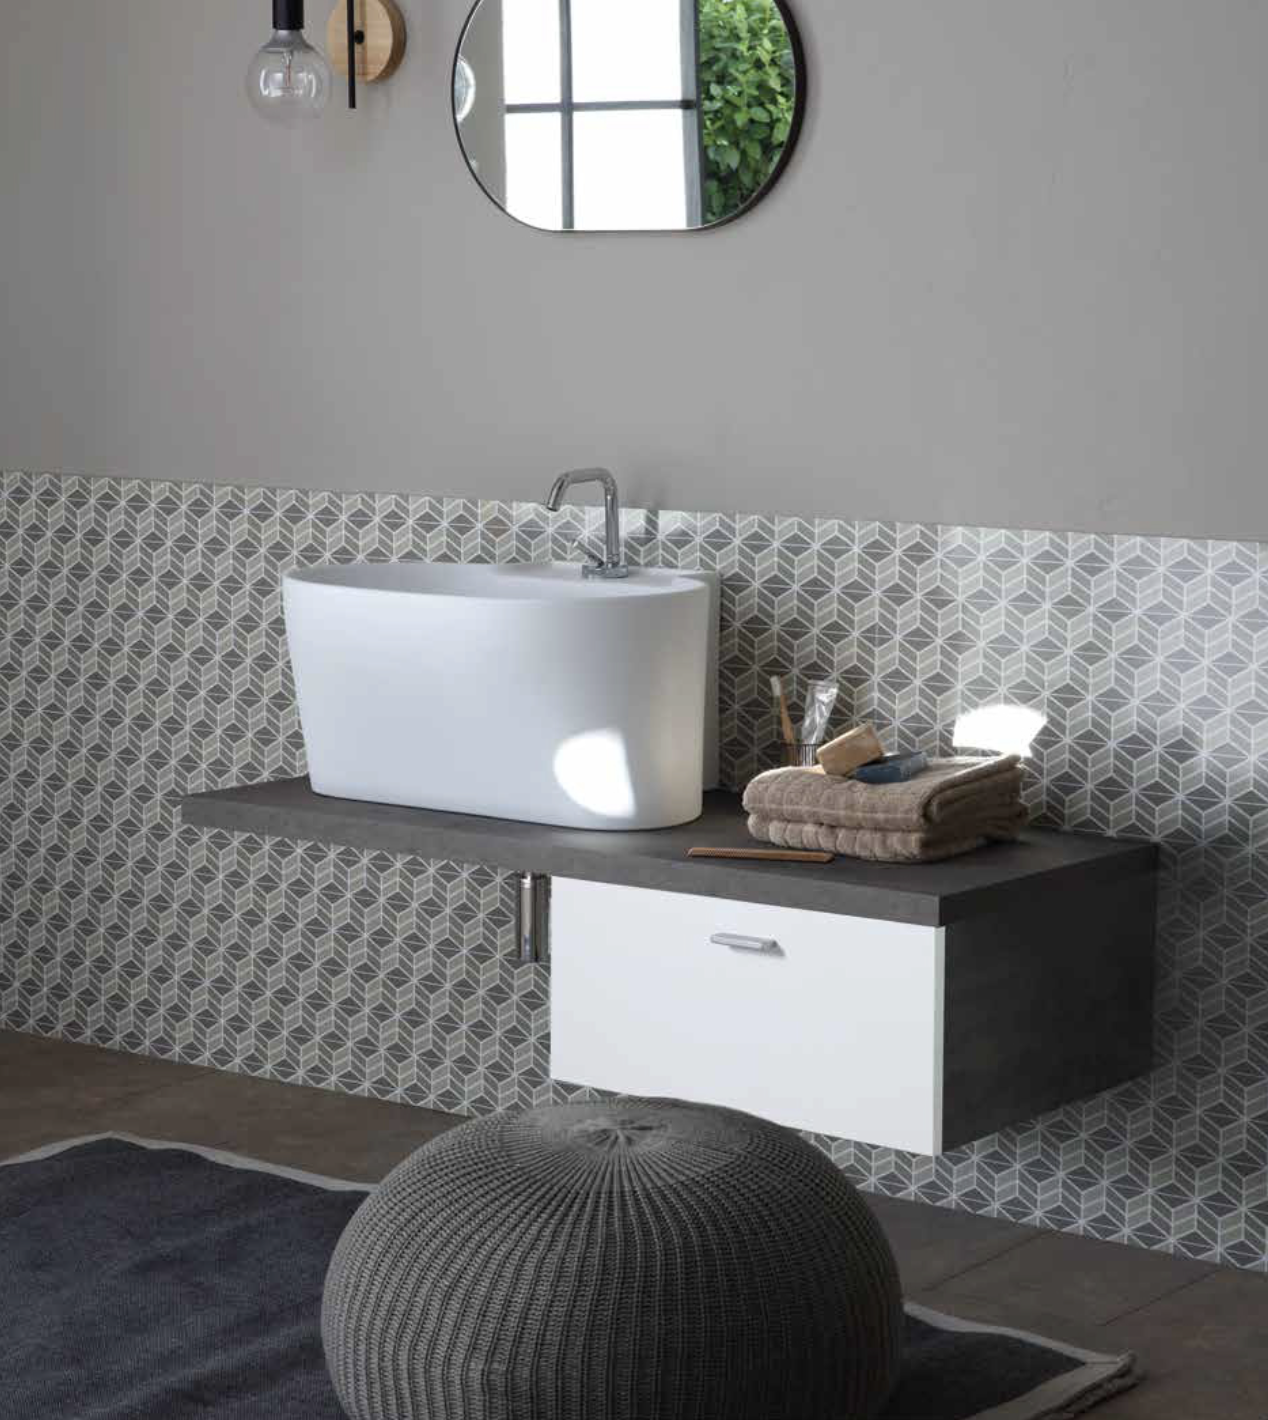 Les compositions de salle de bain Firmiana pour meubler avec goût et fonctionnalité.